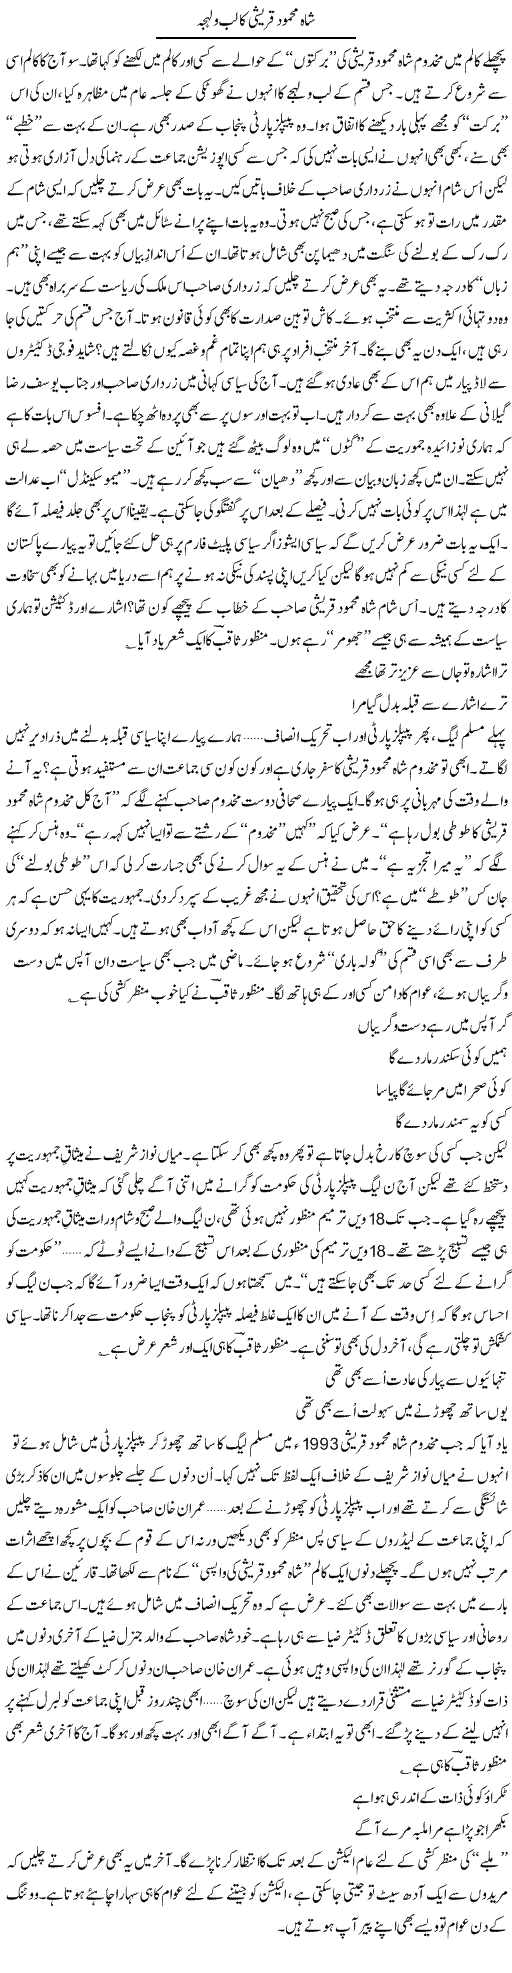 Shah Mehmood Express Column Ijaz Khan 7 December 2011